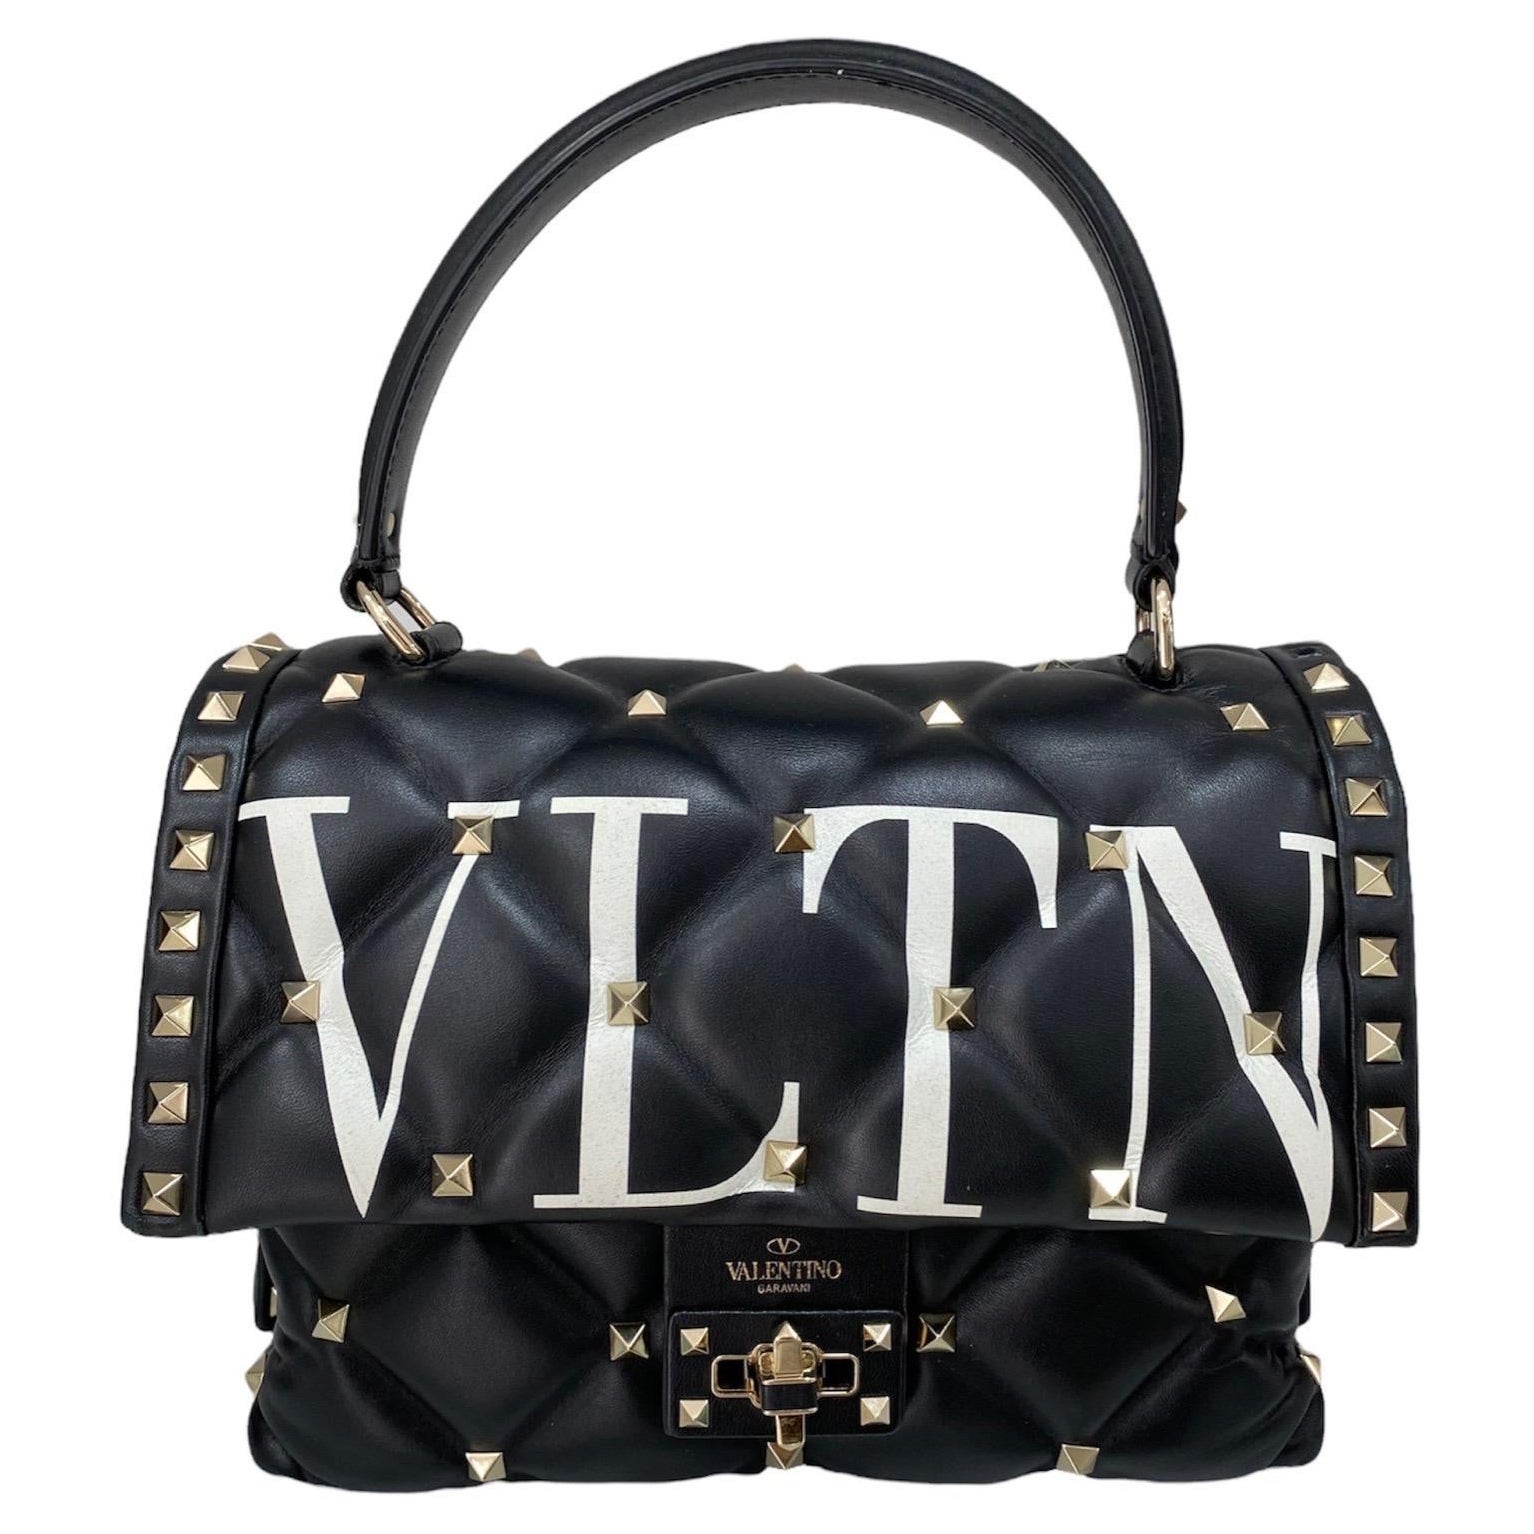 Valentino Candystud Black Handbag